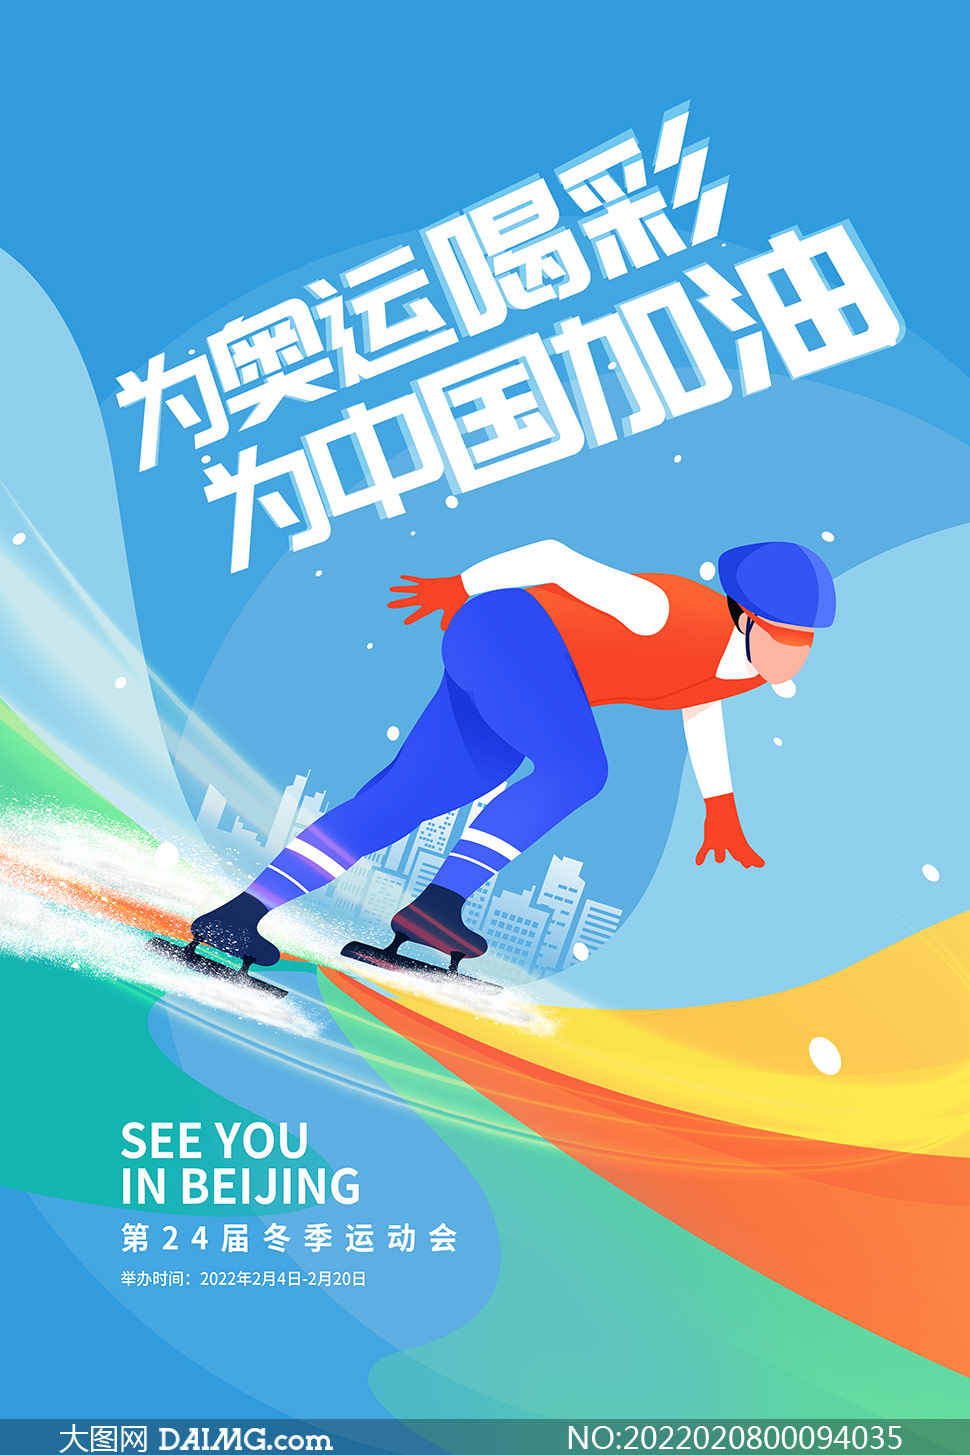 为奥运喝彩为中国加油宣传海报psd素材